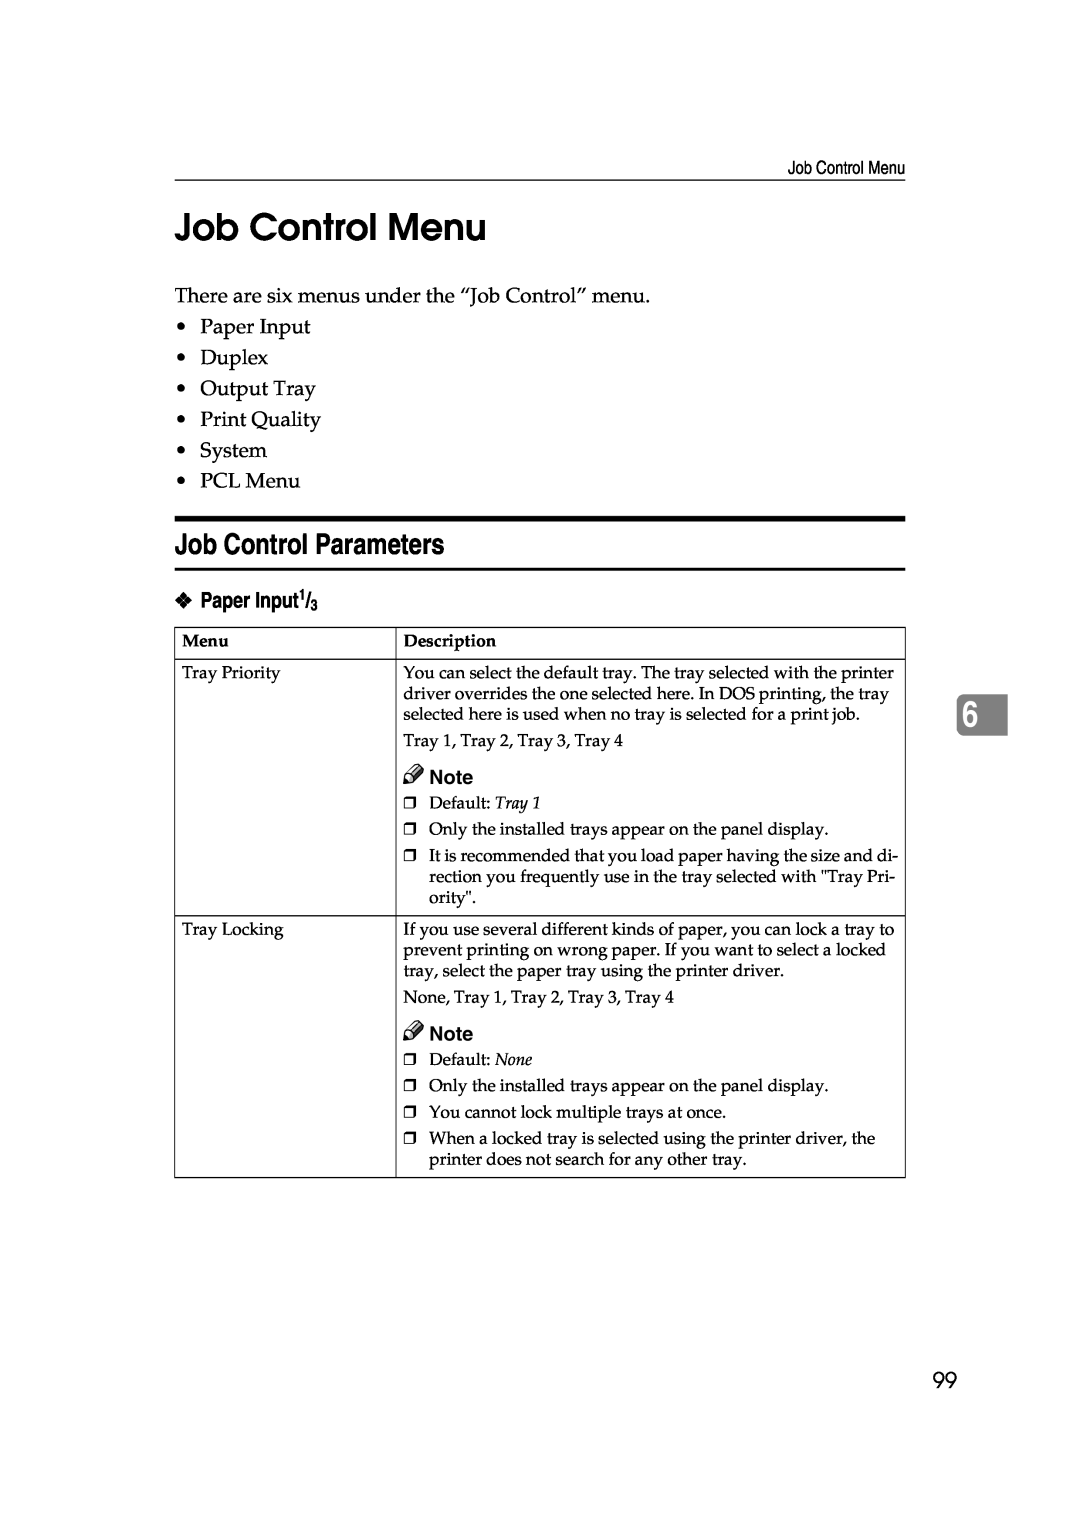 Lanier AP3200 manual Job Control Menu, Job Control Parameters, Description 